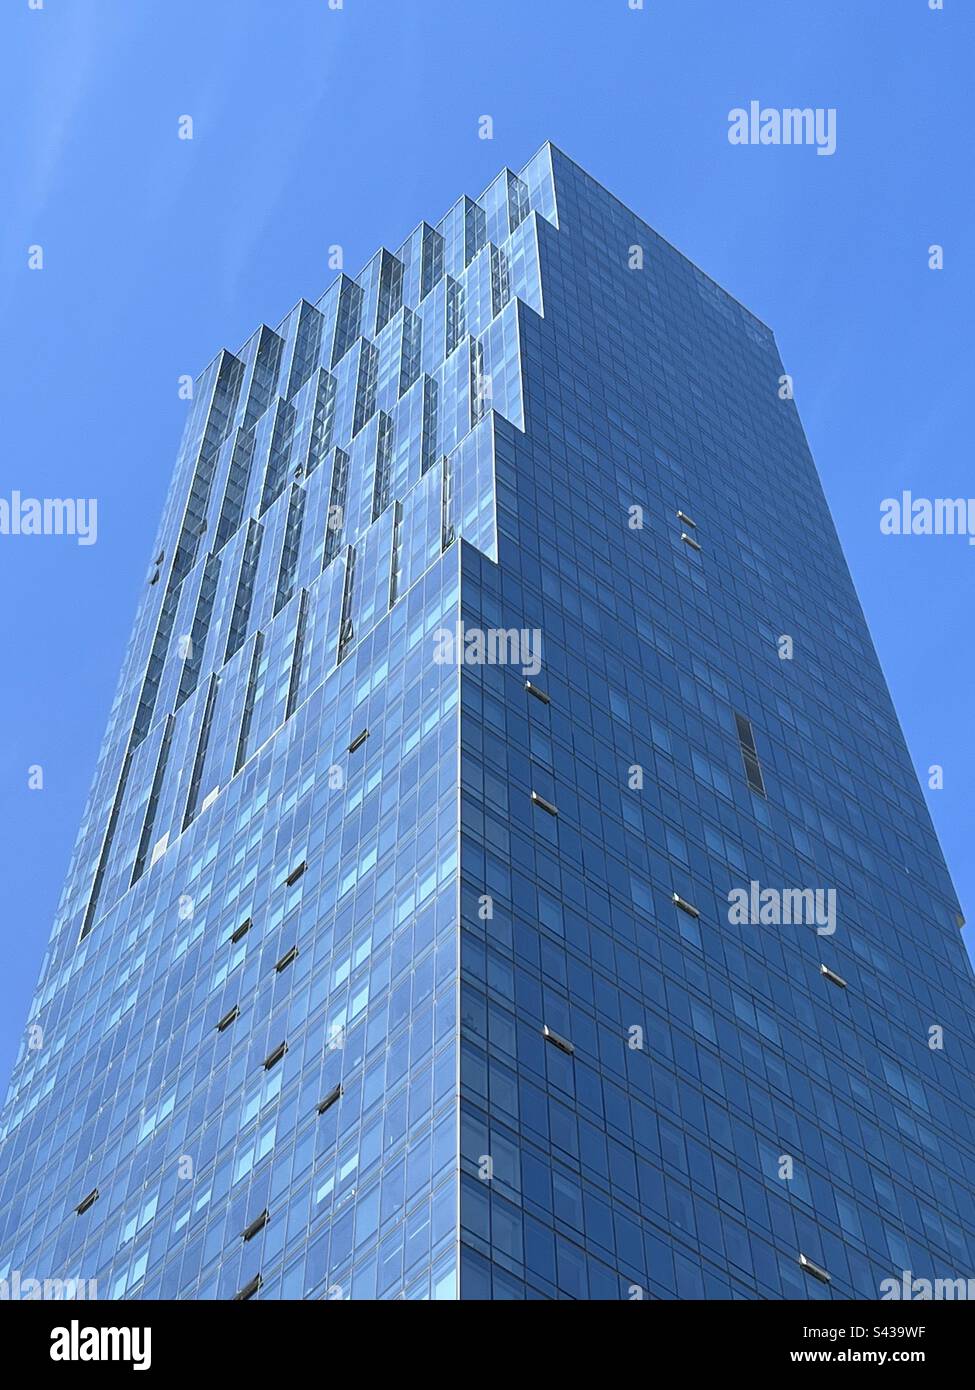 Particolare del grattacielo di vetro (Avery 450, San Francisco) che riflette il cielo blu chiaro Foto Stock